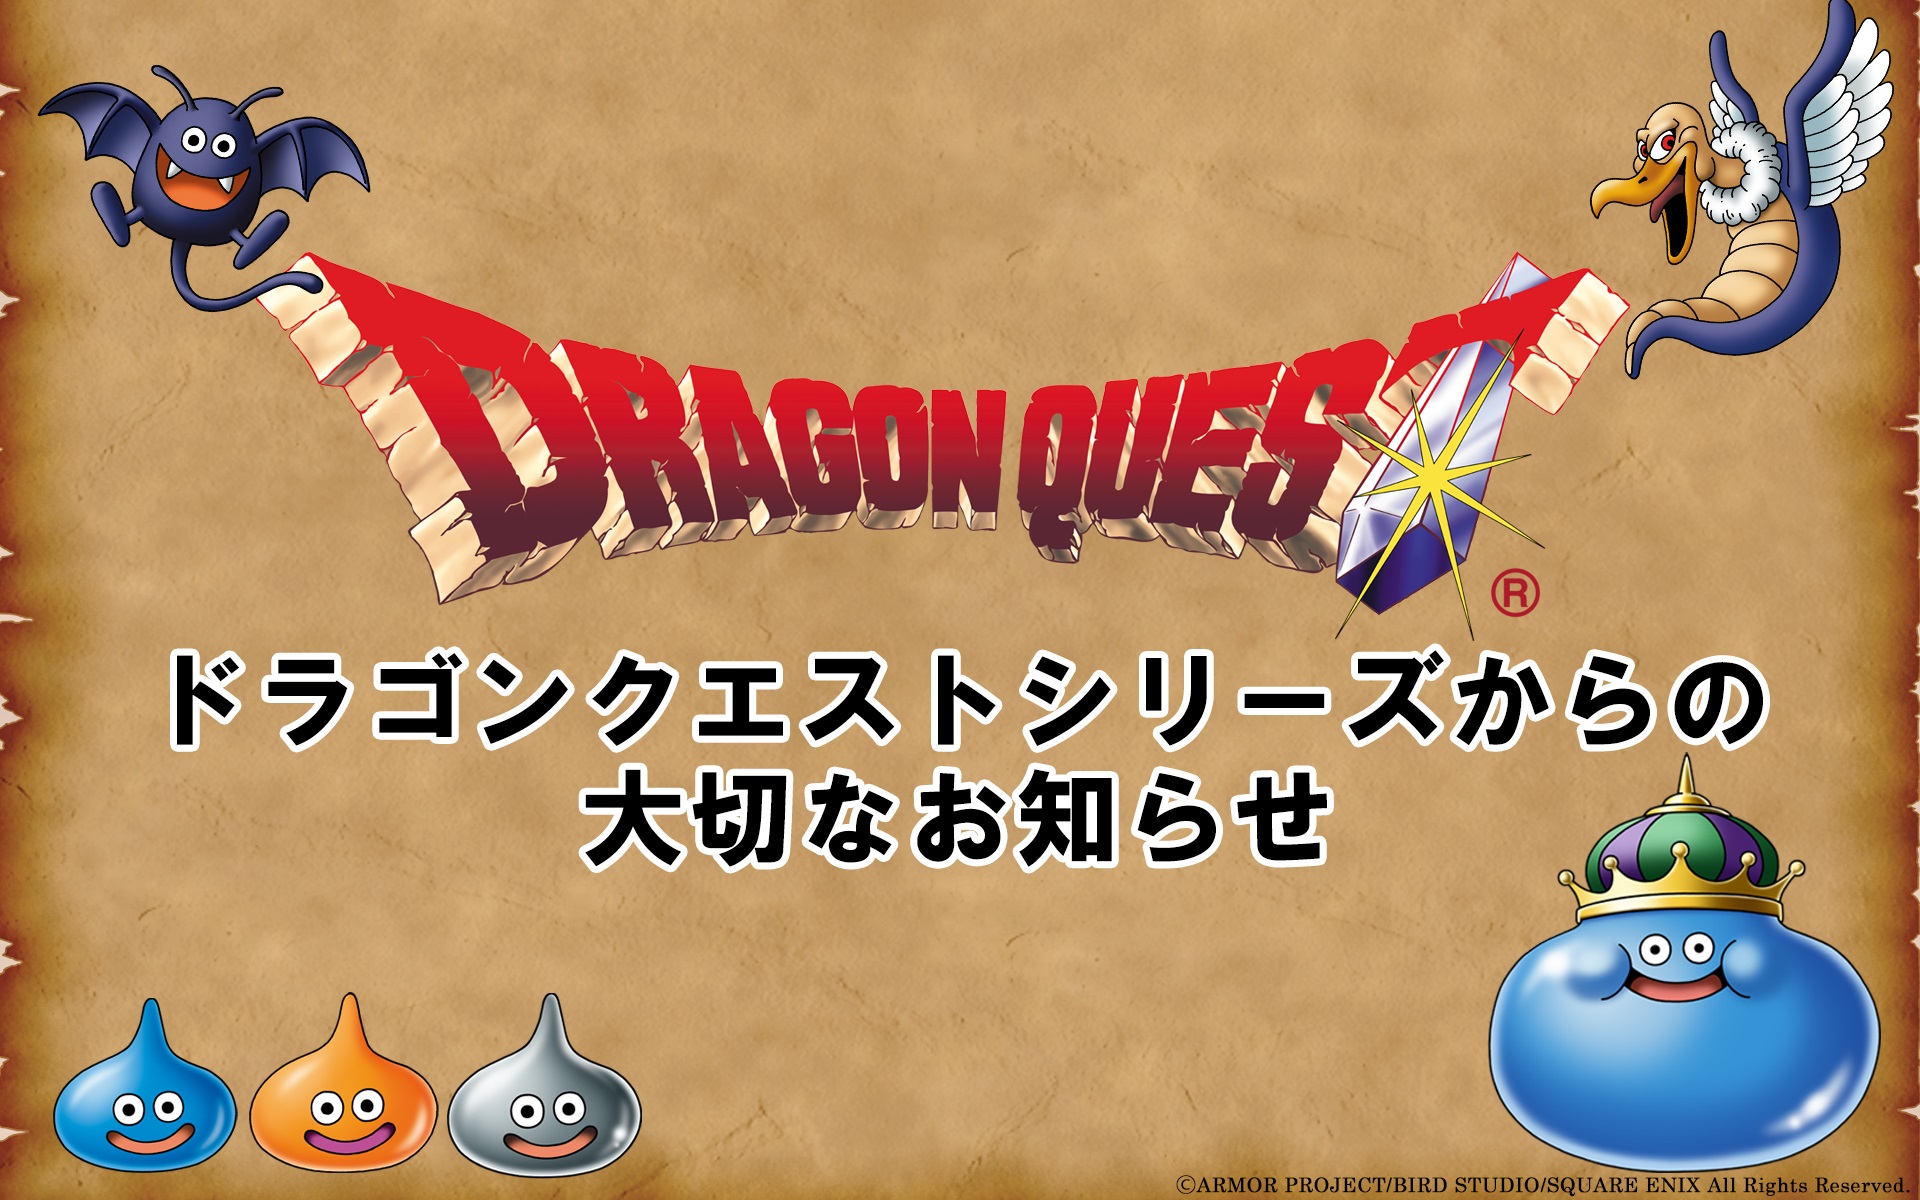 Square Enix Plene Levas Limigojn pri Dragon Quest Livestreaming